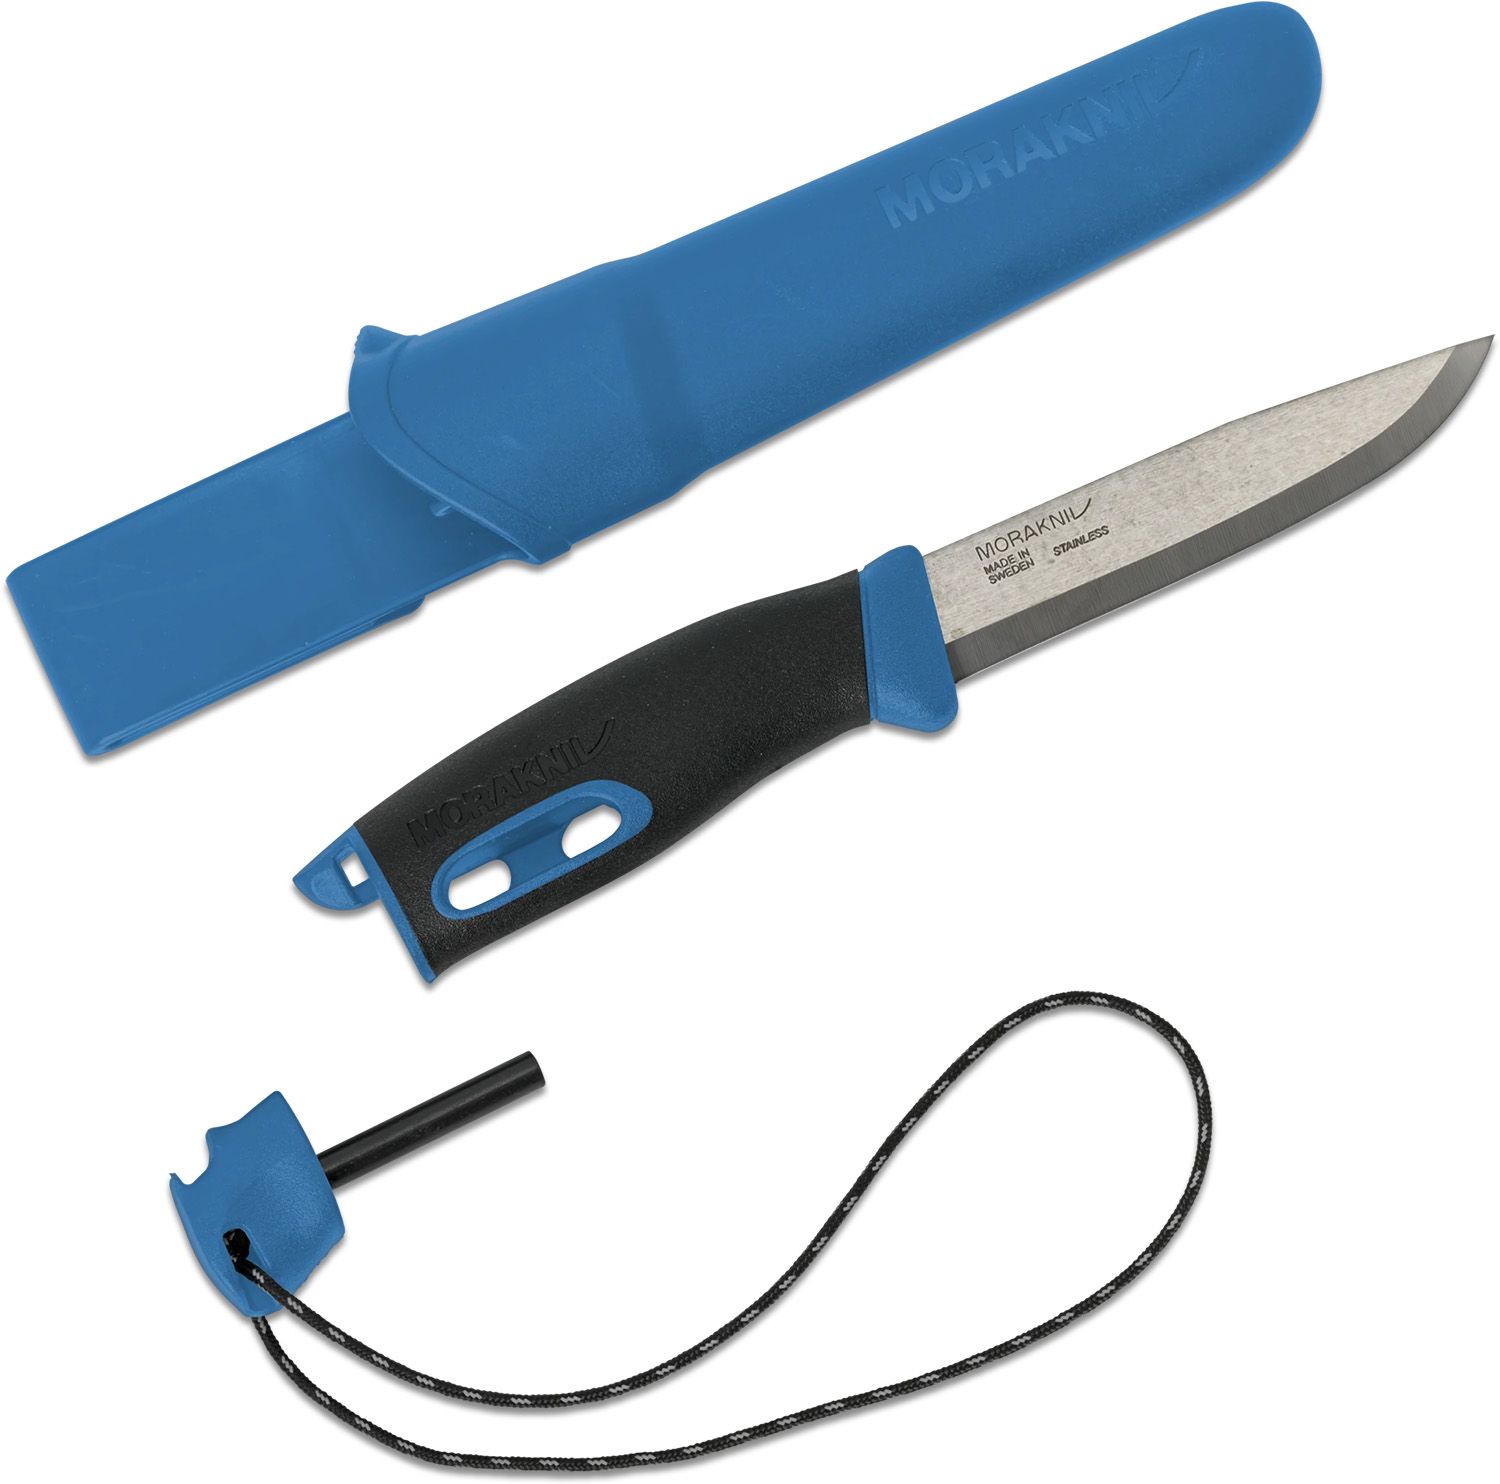 Morakniv Companion Heavy Duty Knife - Carbon Steel – Legit Kit